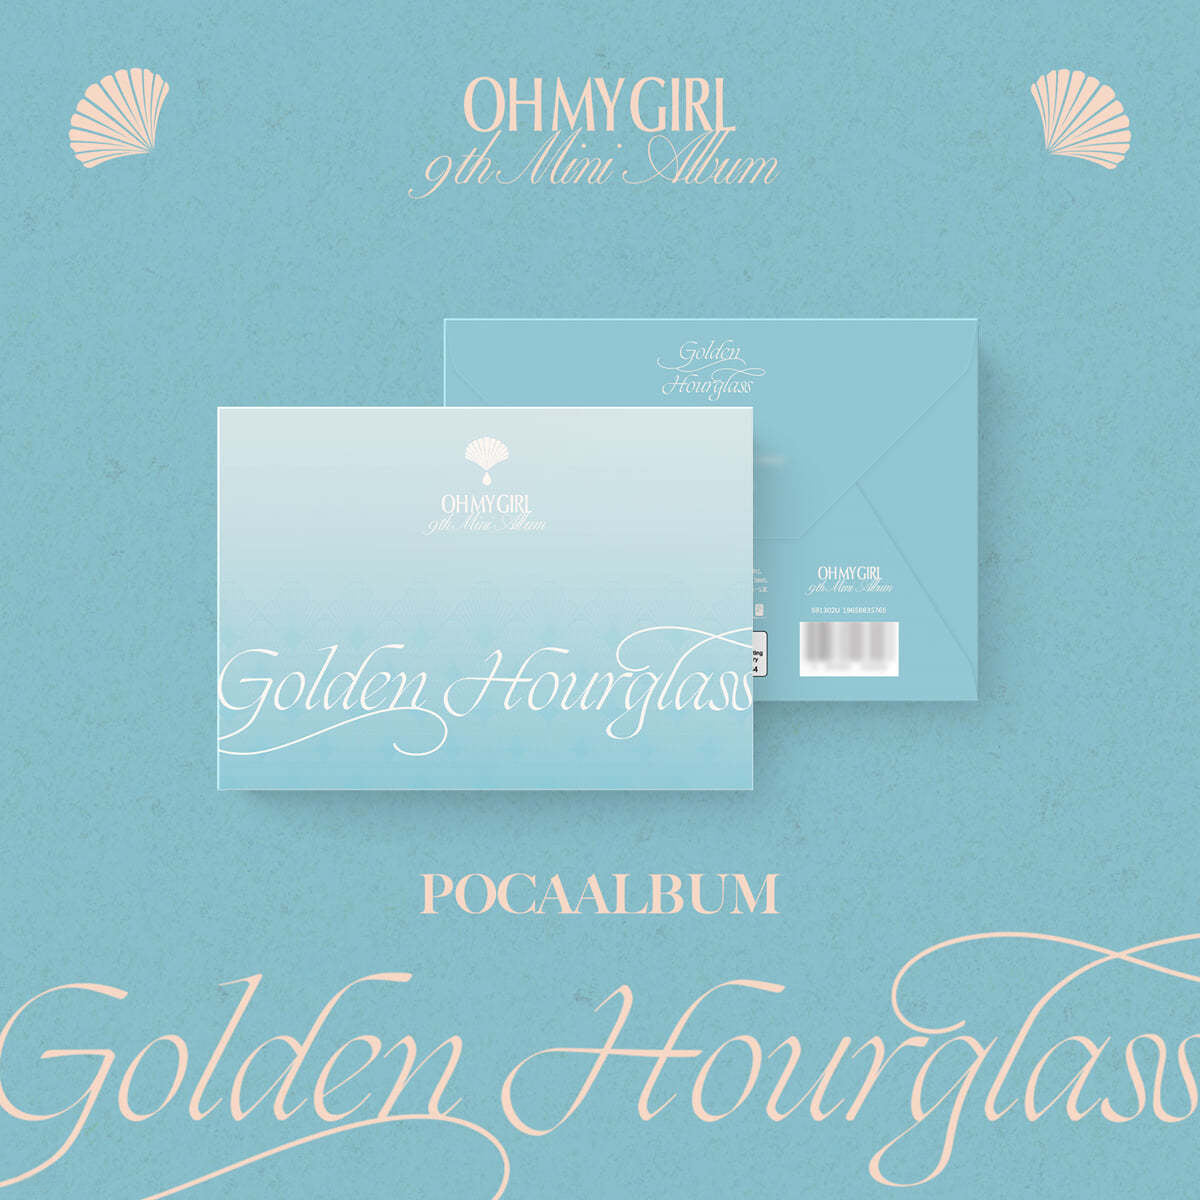 OH MY GIRL - Golden Hourglass (POCA ALBUM)